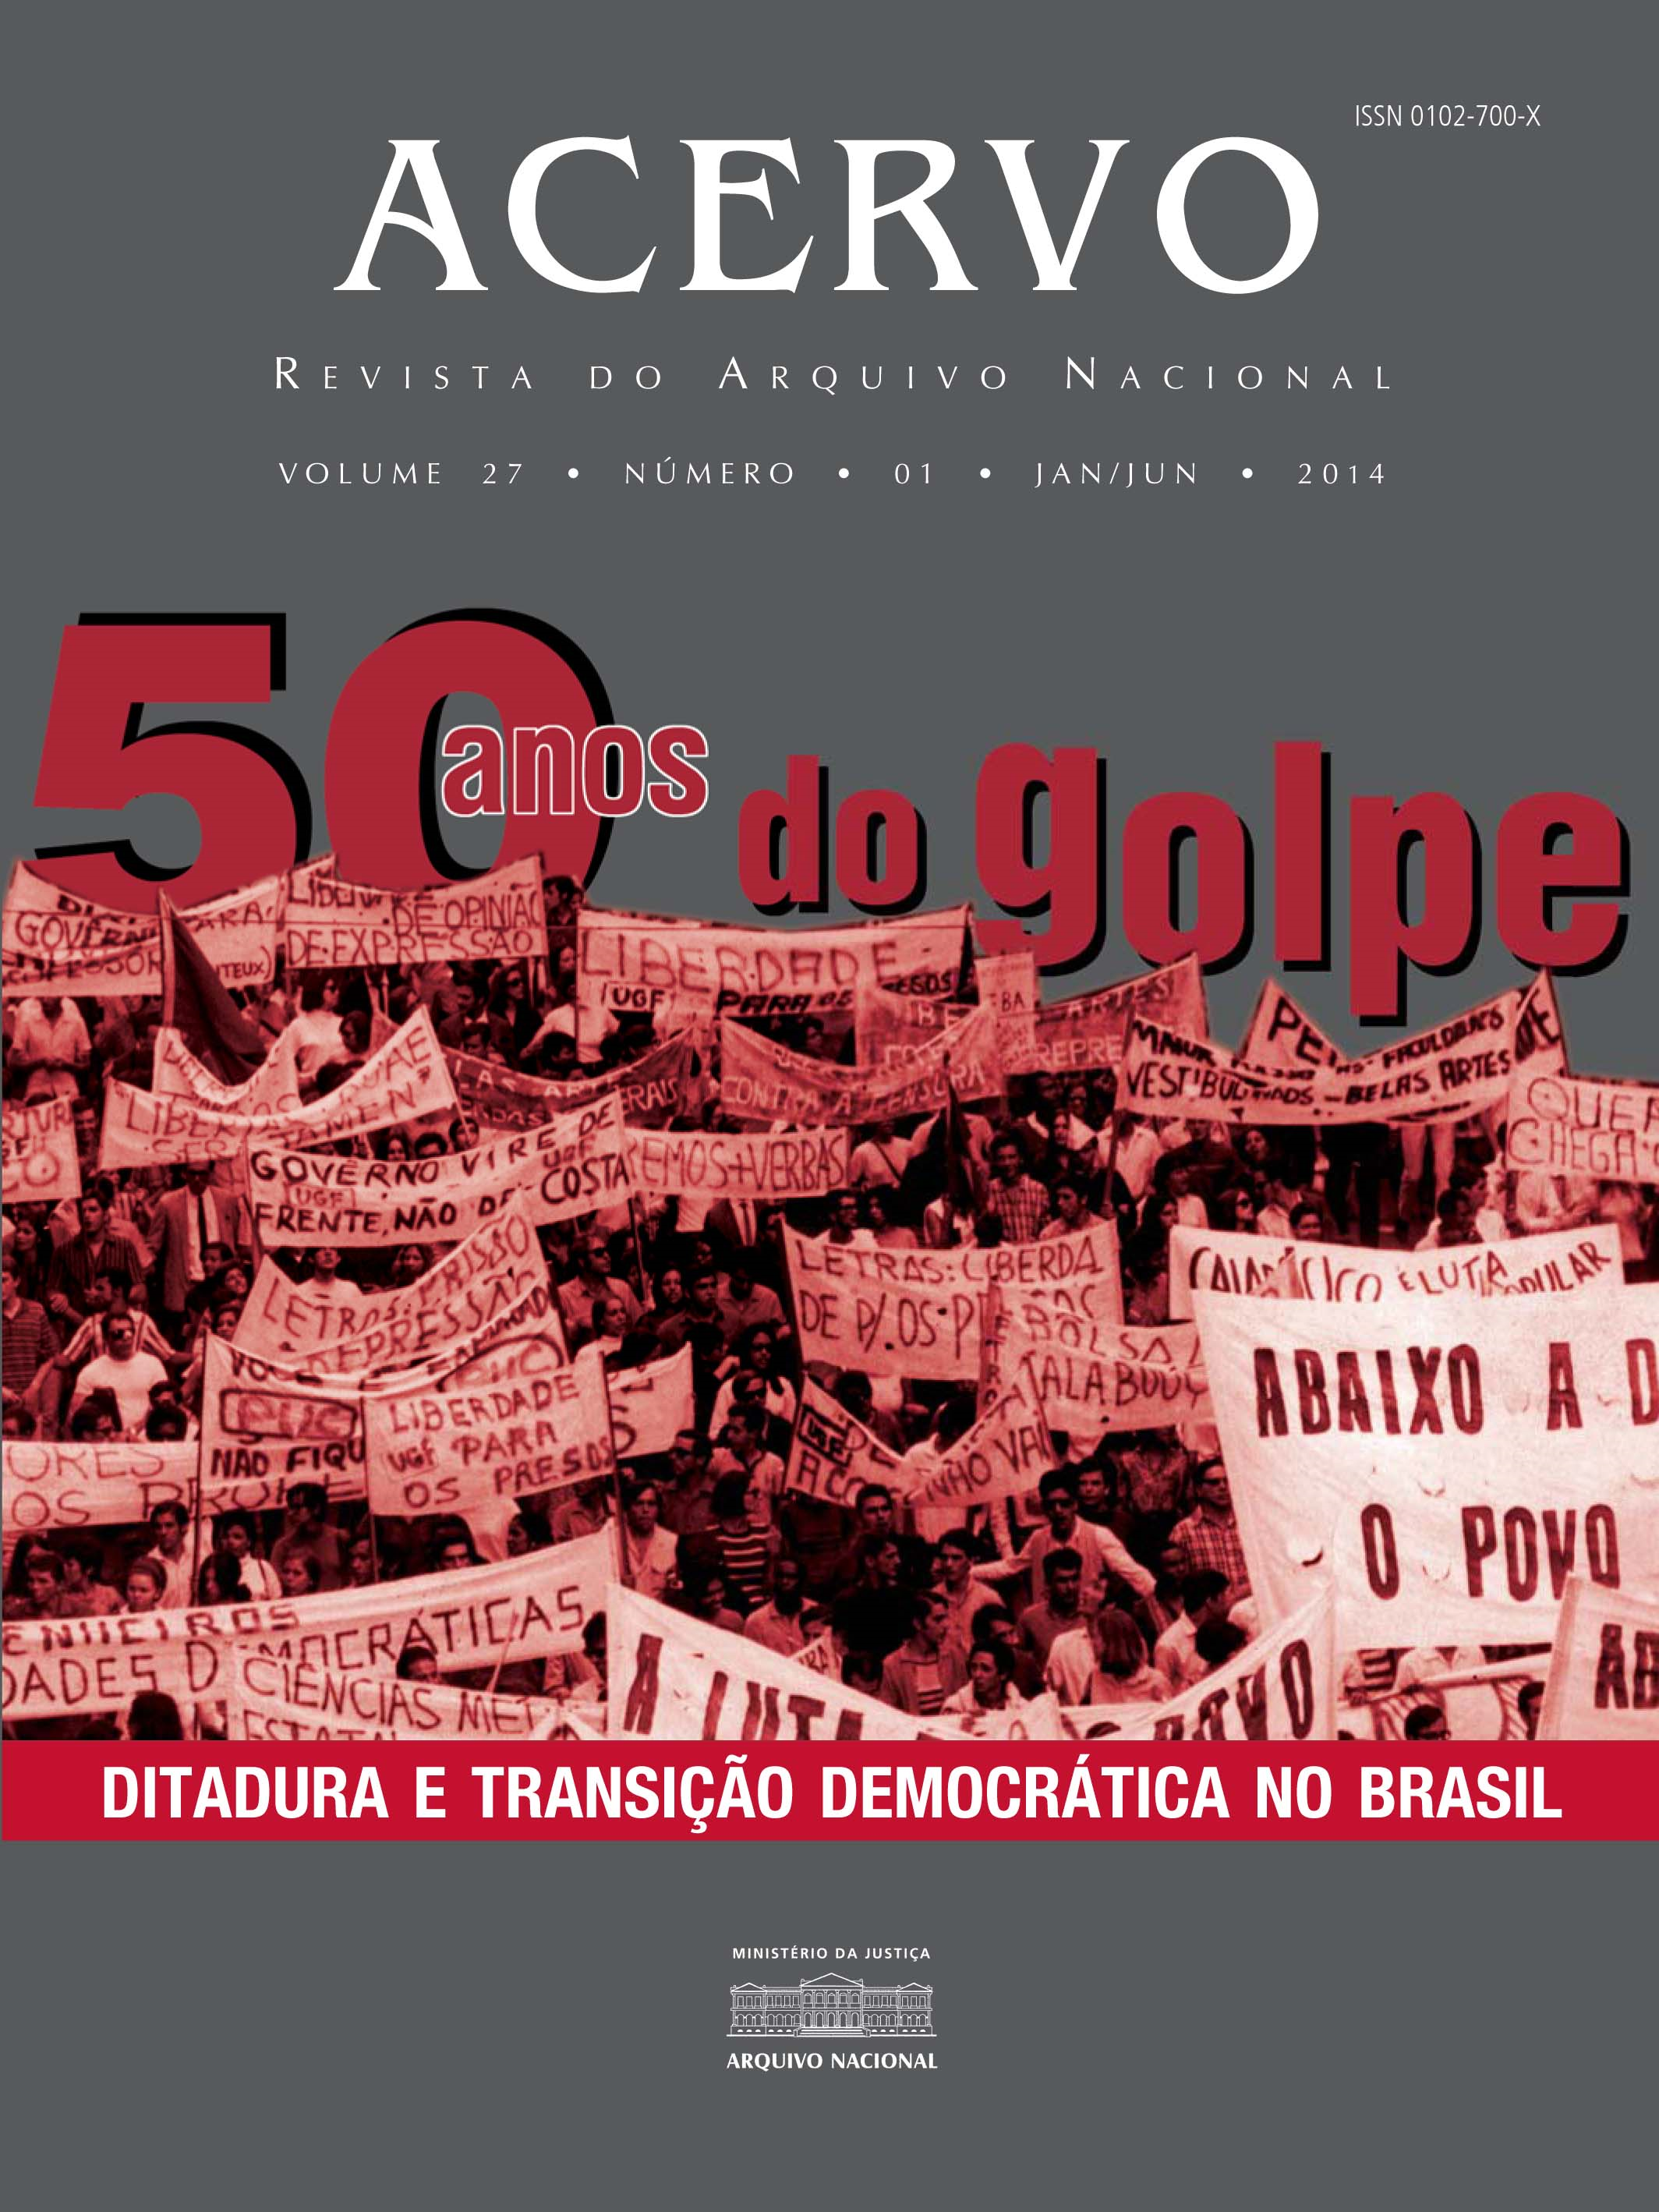 50 anos do golpe: ditadura e transição democrática no Brasil